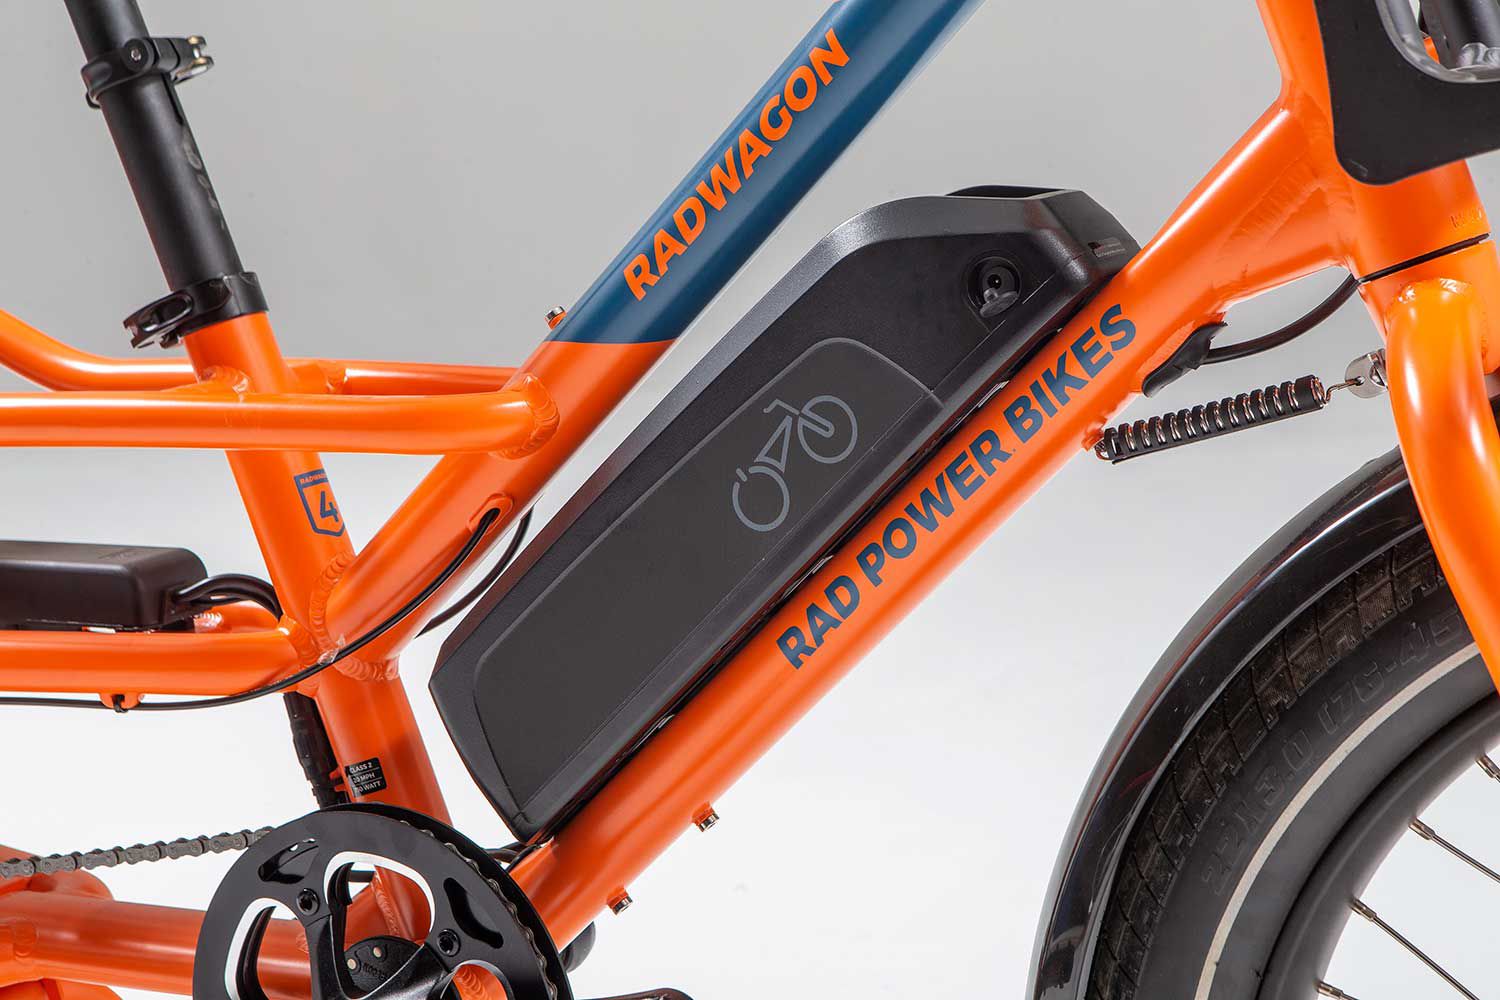 RadWagon 4 - Electric Cargo Bike, Rad Power Bikes